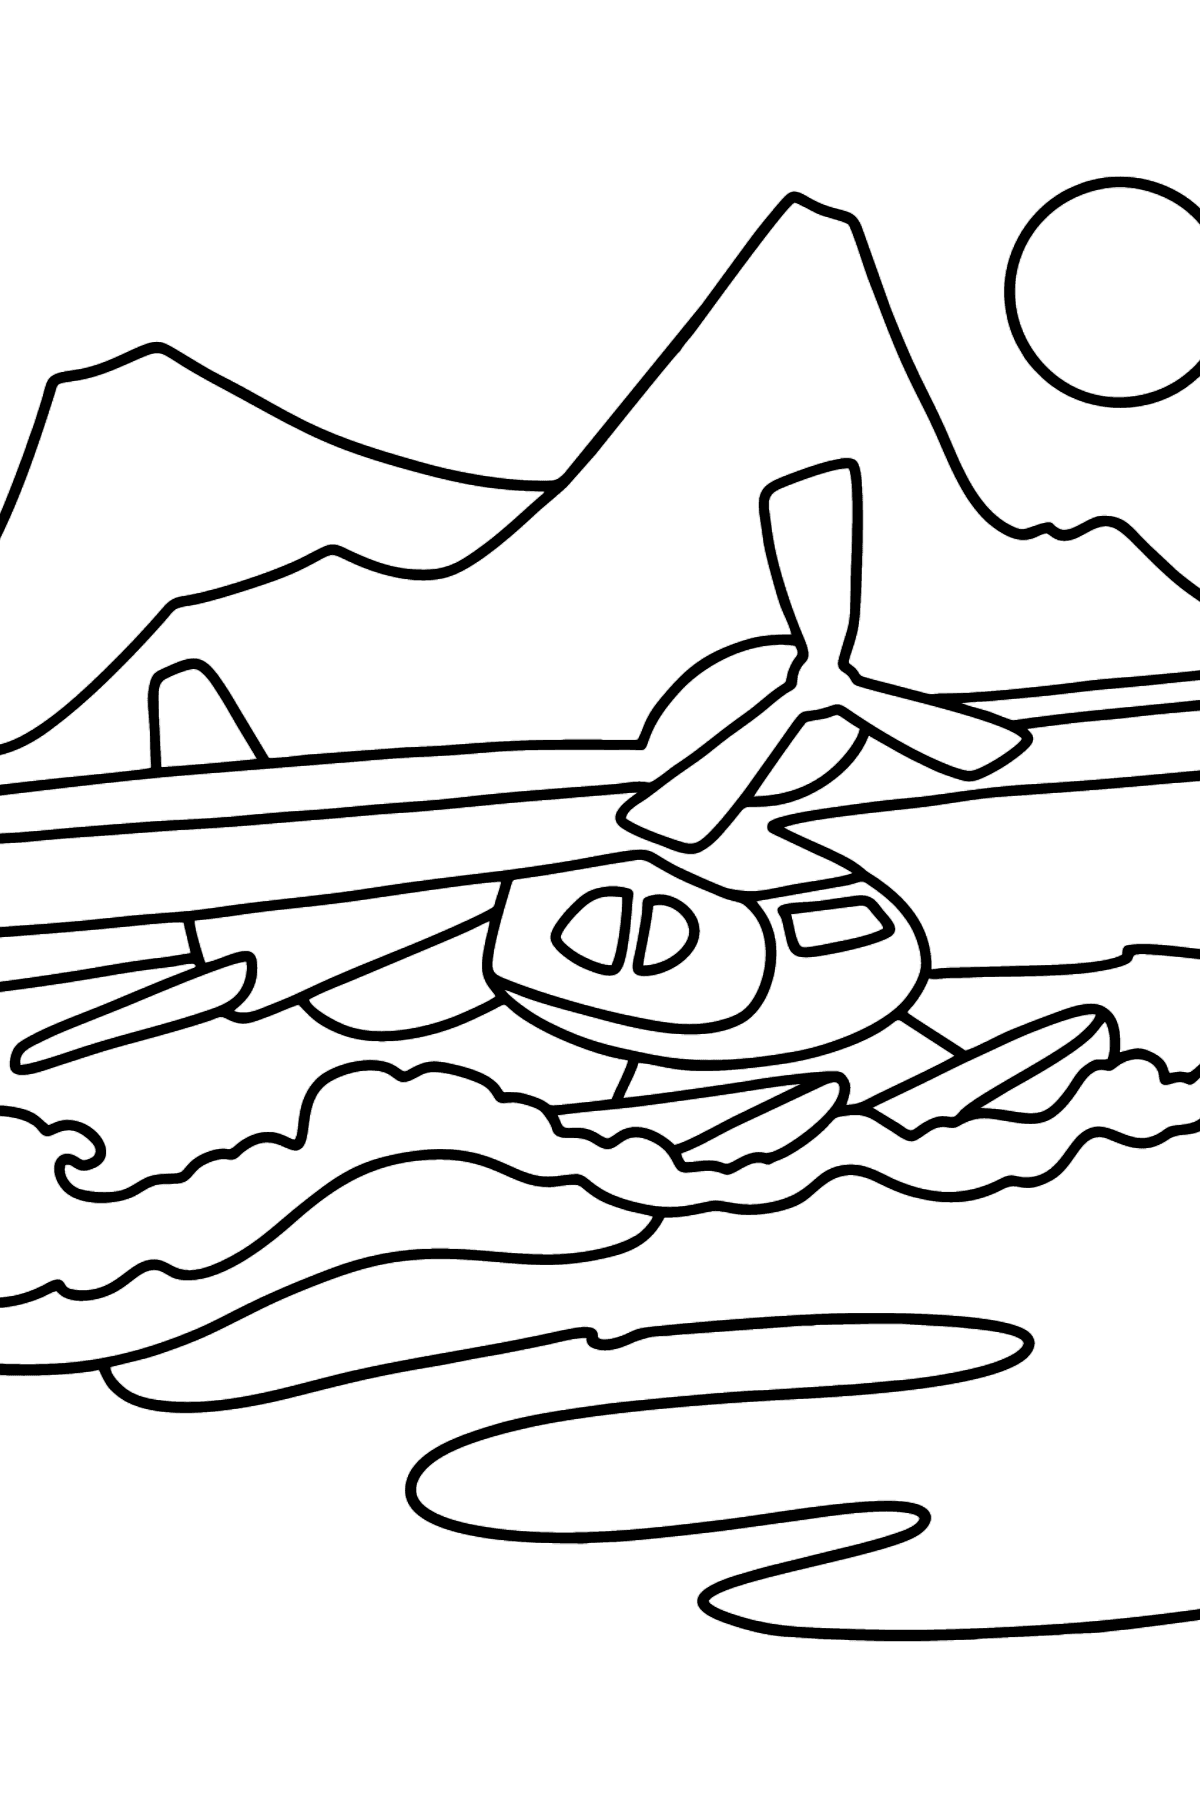 Kleines Wasserflugzeug Ausmalbild - Malvorlagen für Kinder